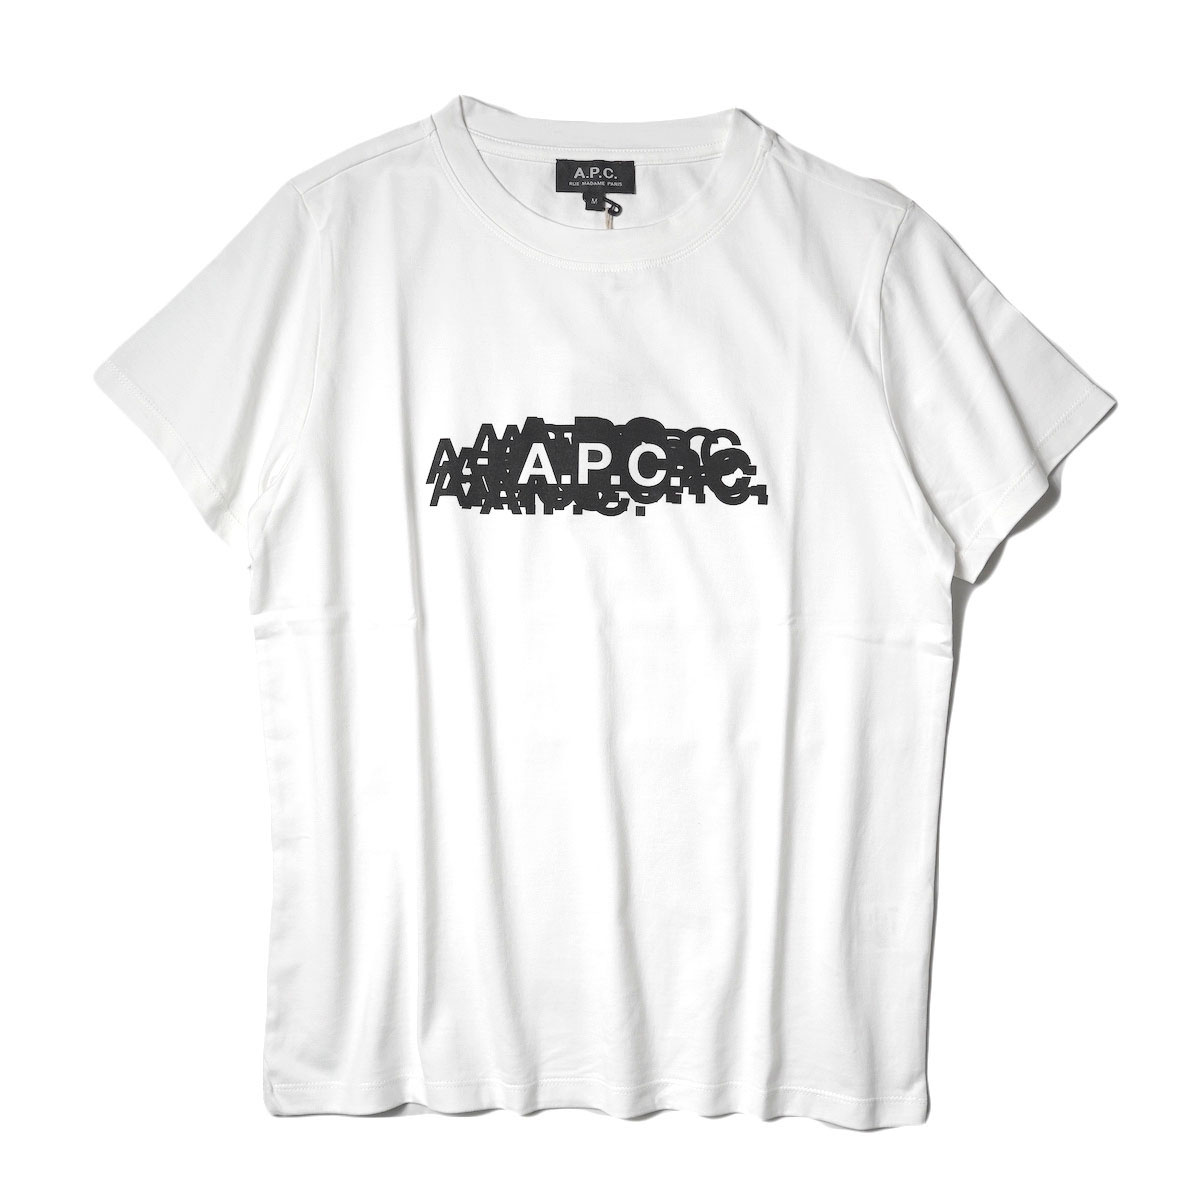 A.P.C. / Koraku F Tシャツ (White)